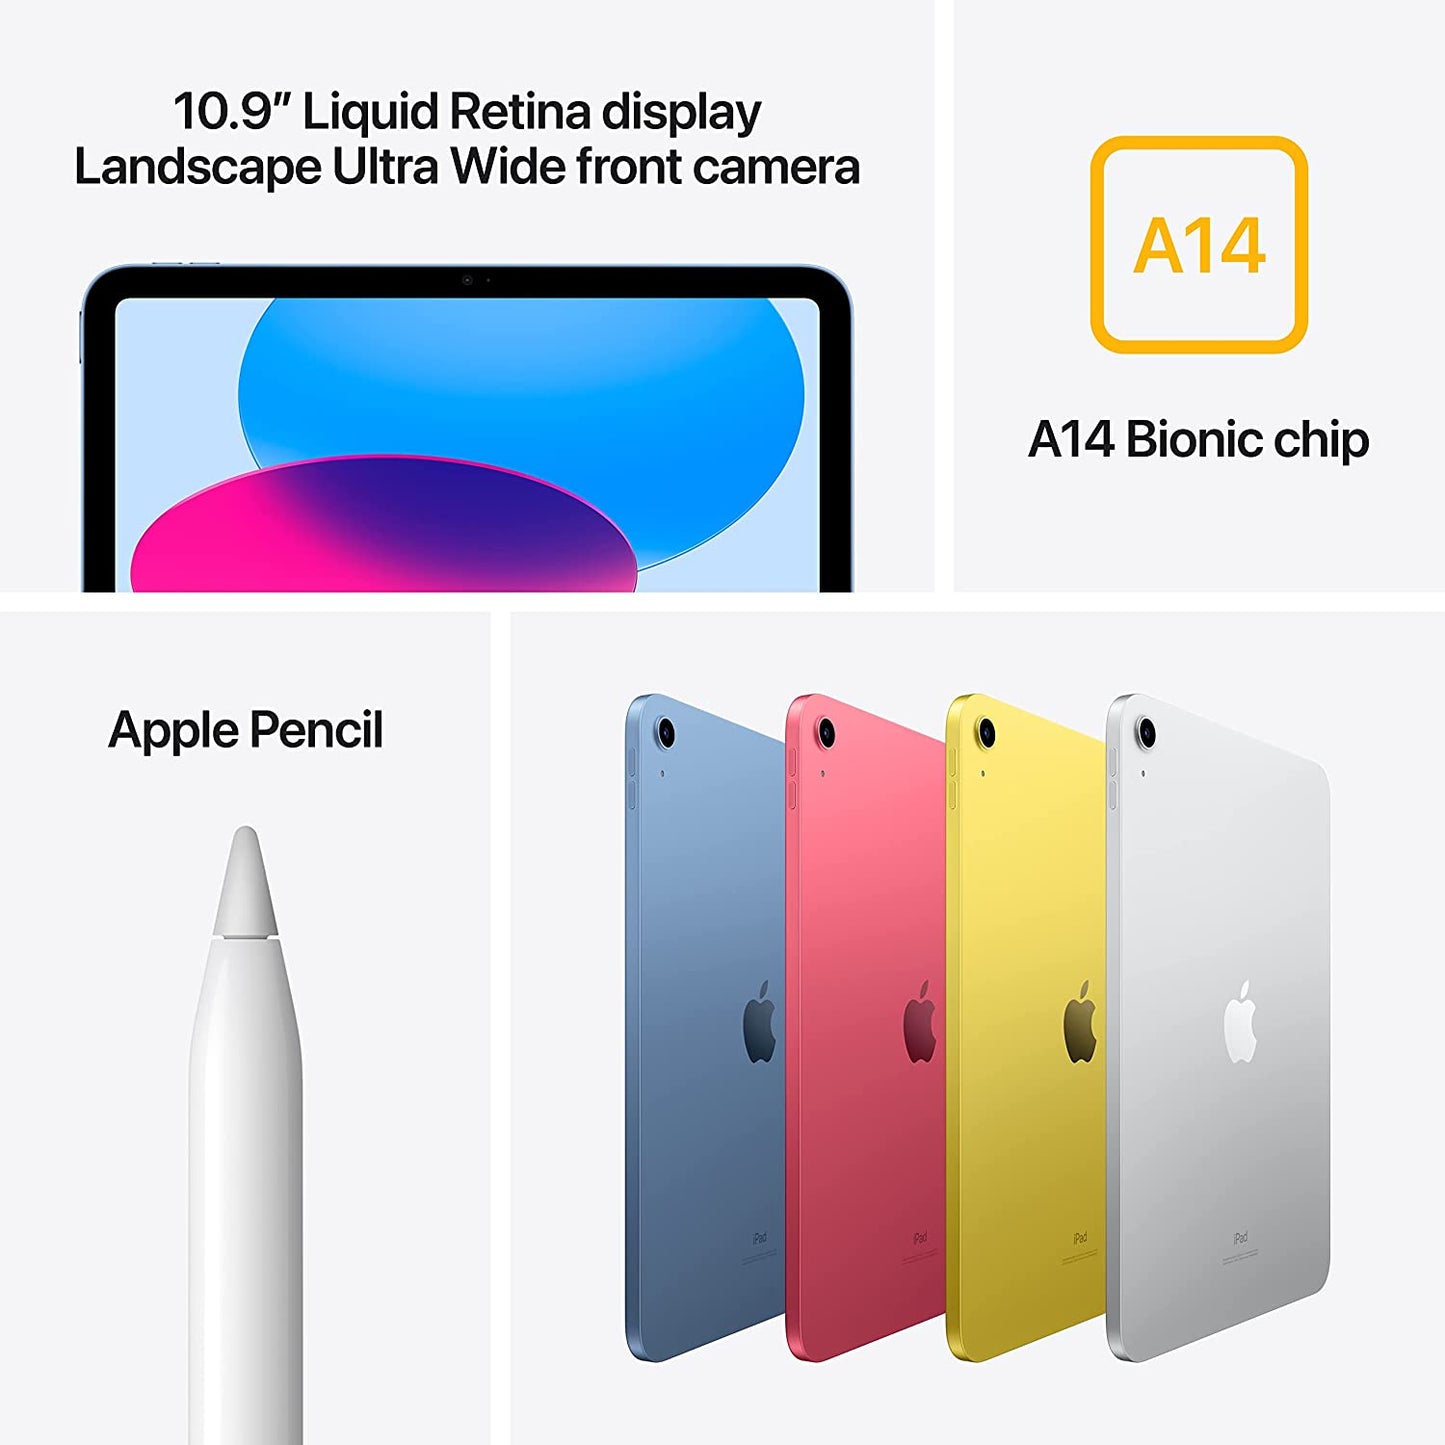 Apple 10.9-in iPad Wi-Fi 64GB - Yellow - MPQ23LL/A (10th Gen)